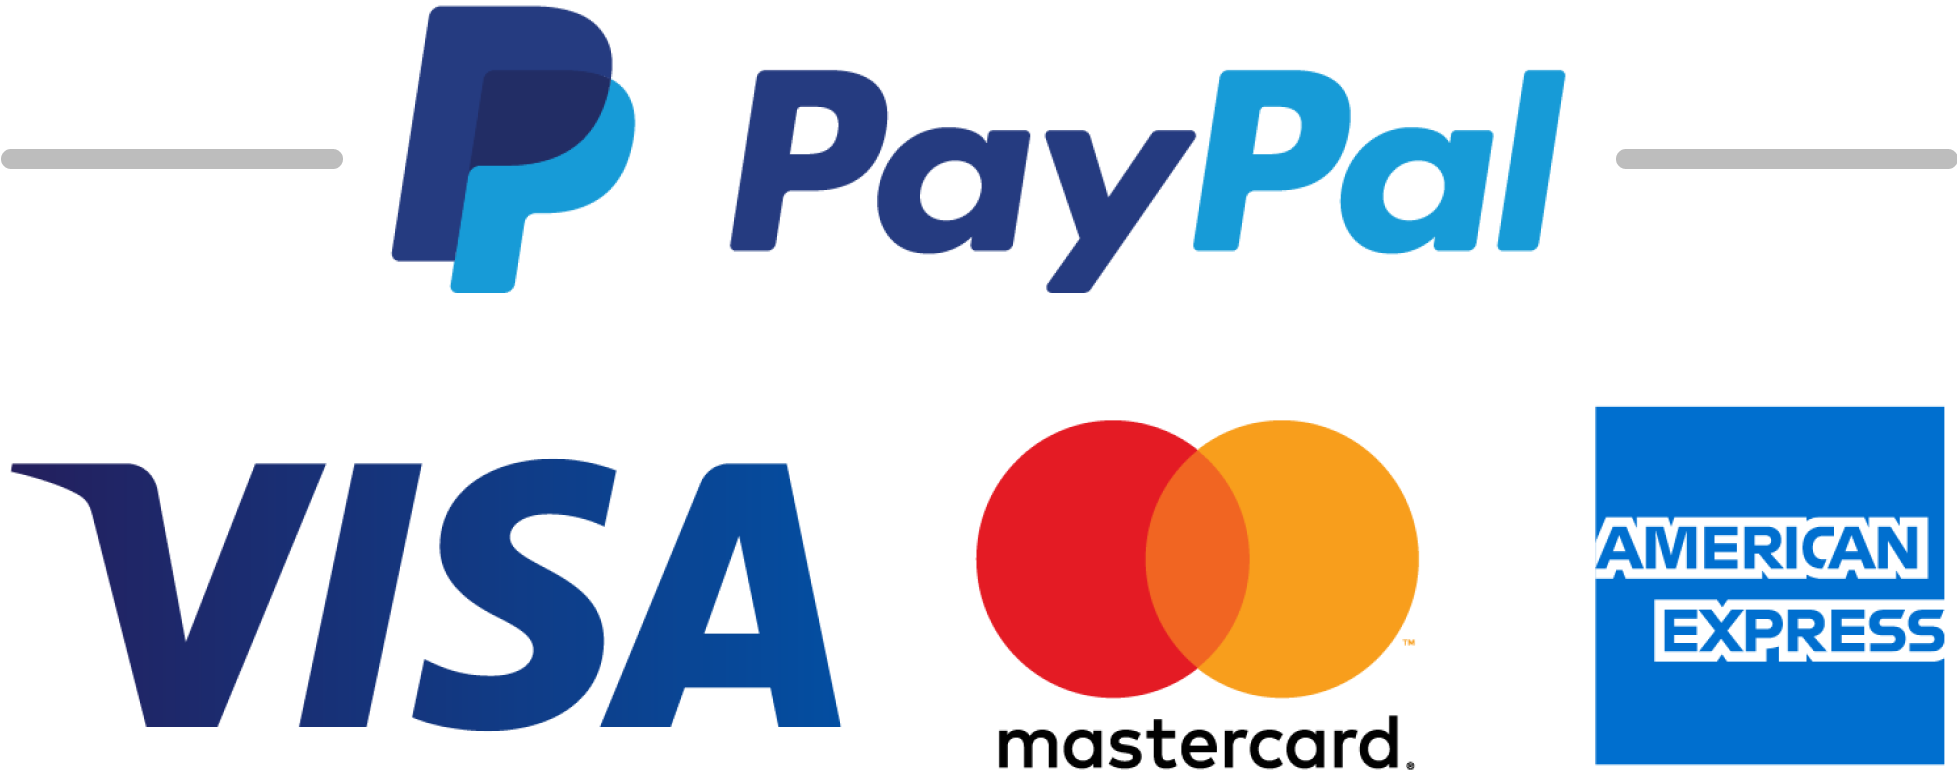 Logos for Paypal, Visa, Matercard, and American Express